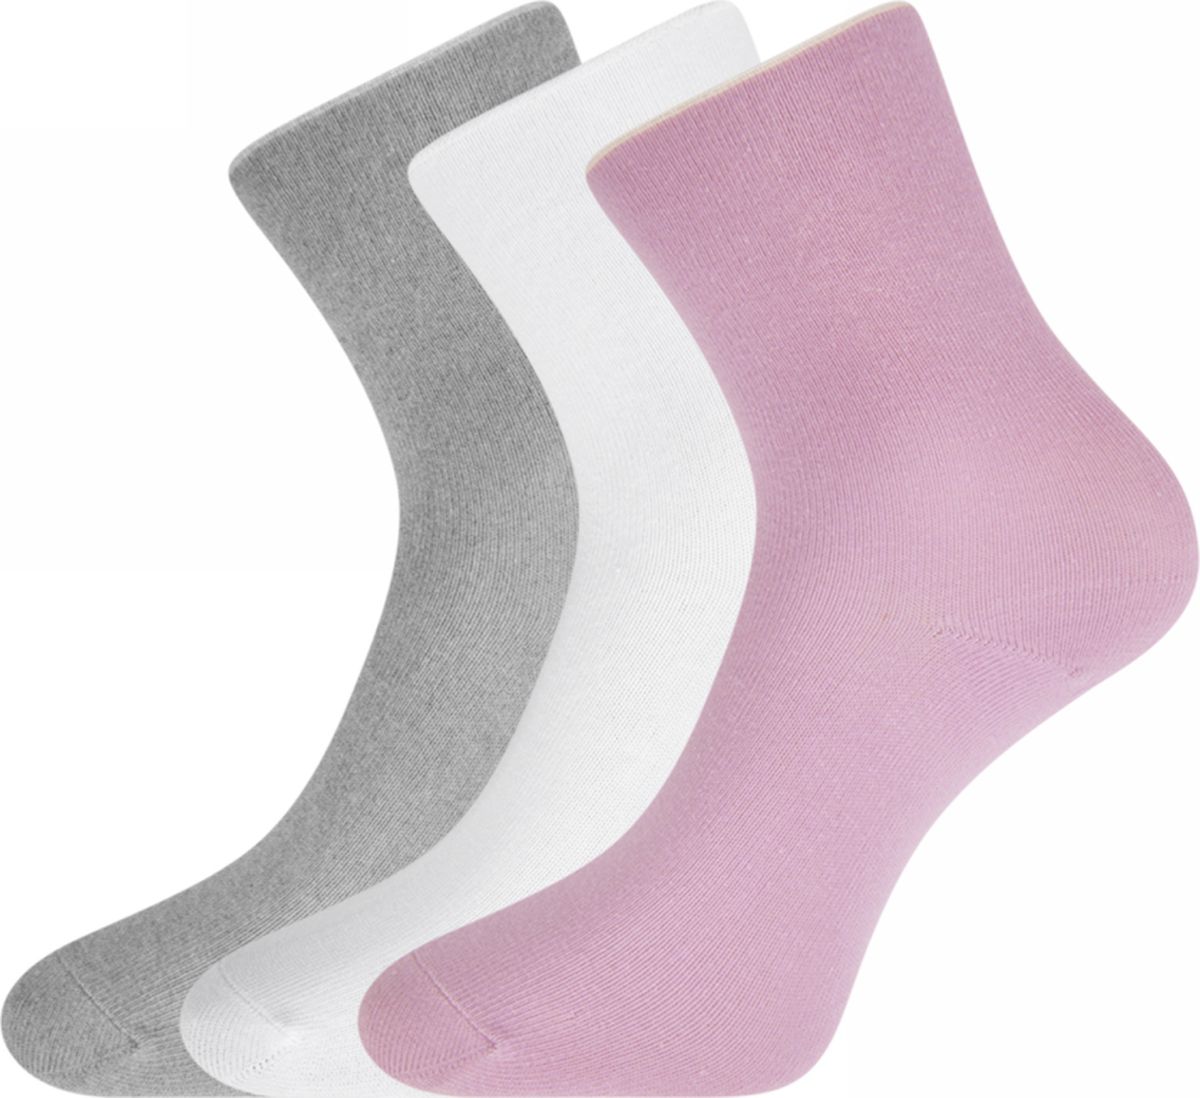 Озон носочки. Комплект носков женских oodji 57102418t3. Носки микрофибра. Резинка для носков мазекея. Носки эластичные на пылесос.